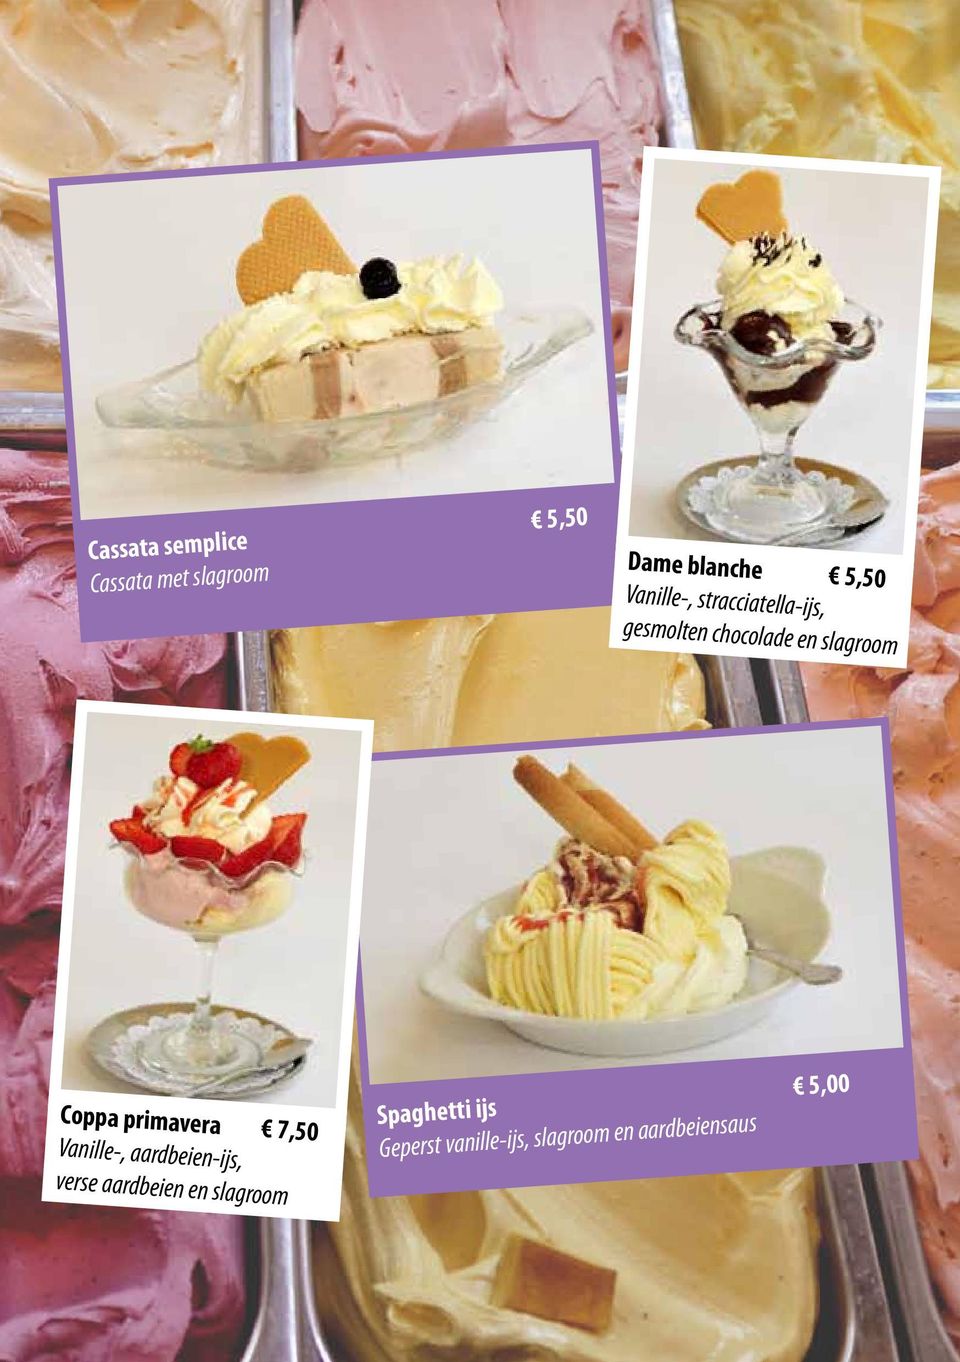 Coppa primavera 7,50 Vanille-, aardbeien-ijs, verse aardbeien en